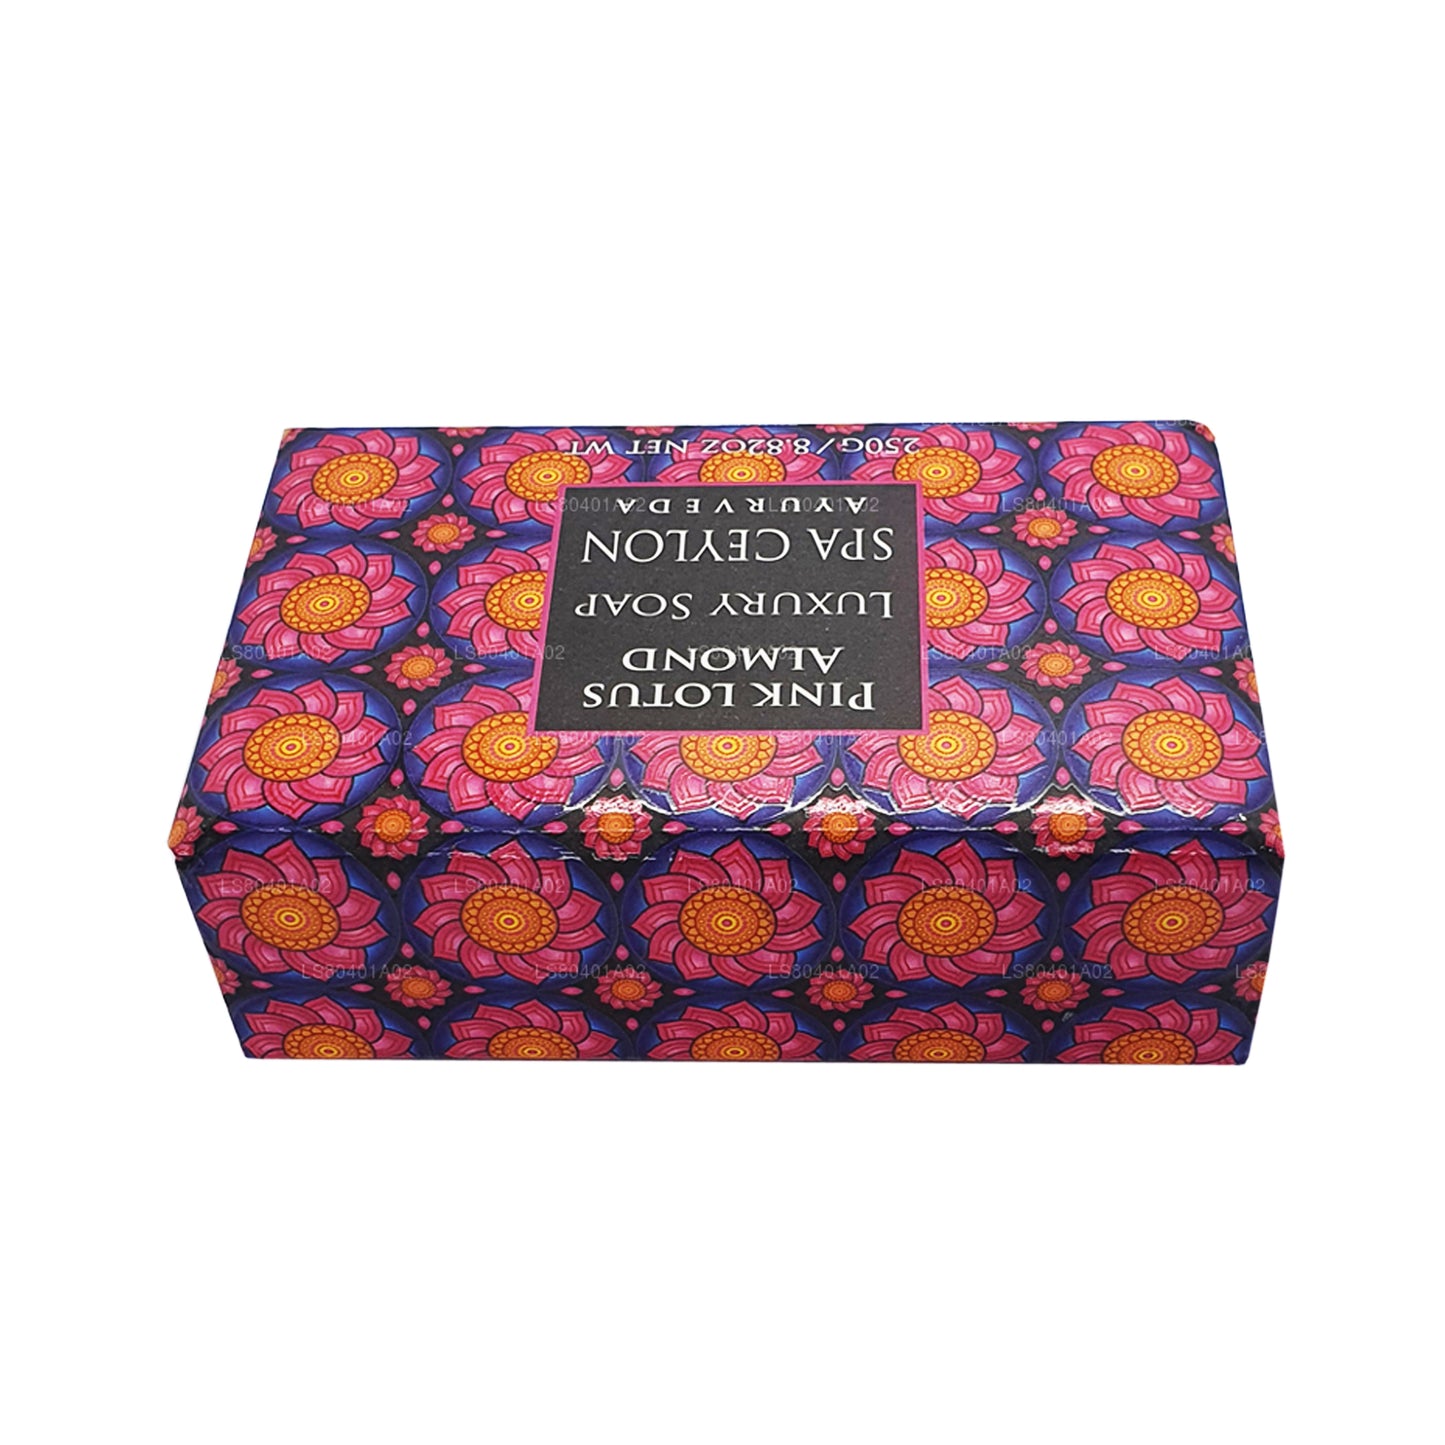 Jabón de lujo Spa Ceylon Pink Lotus Almond (250 g)